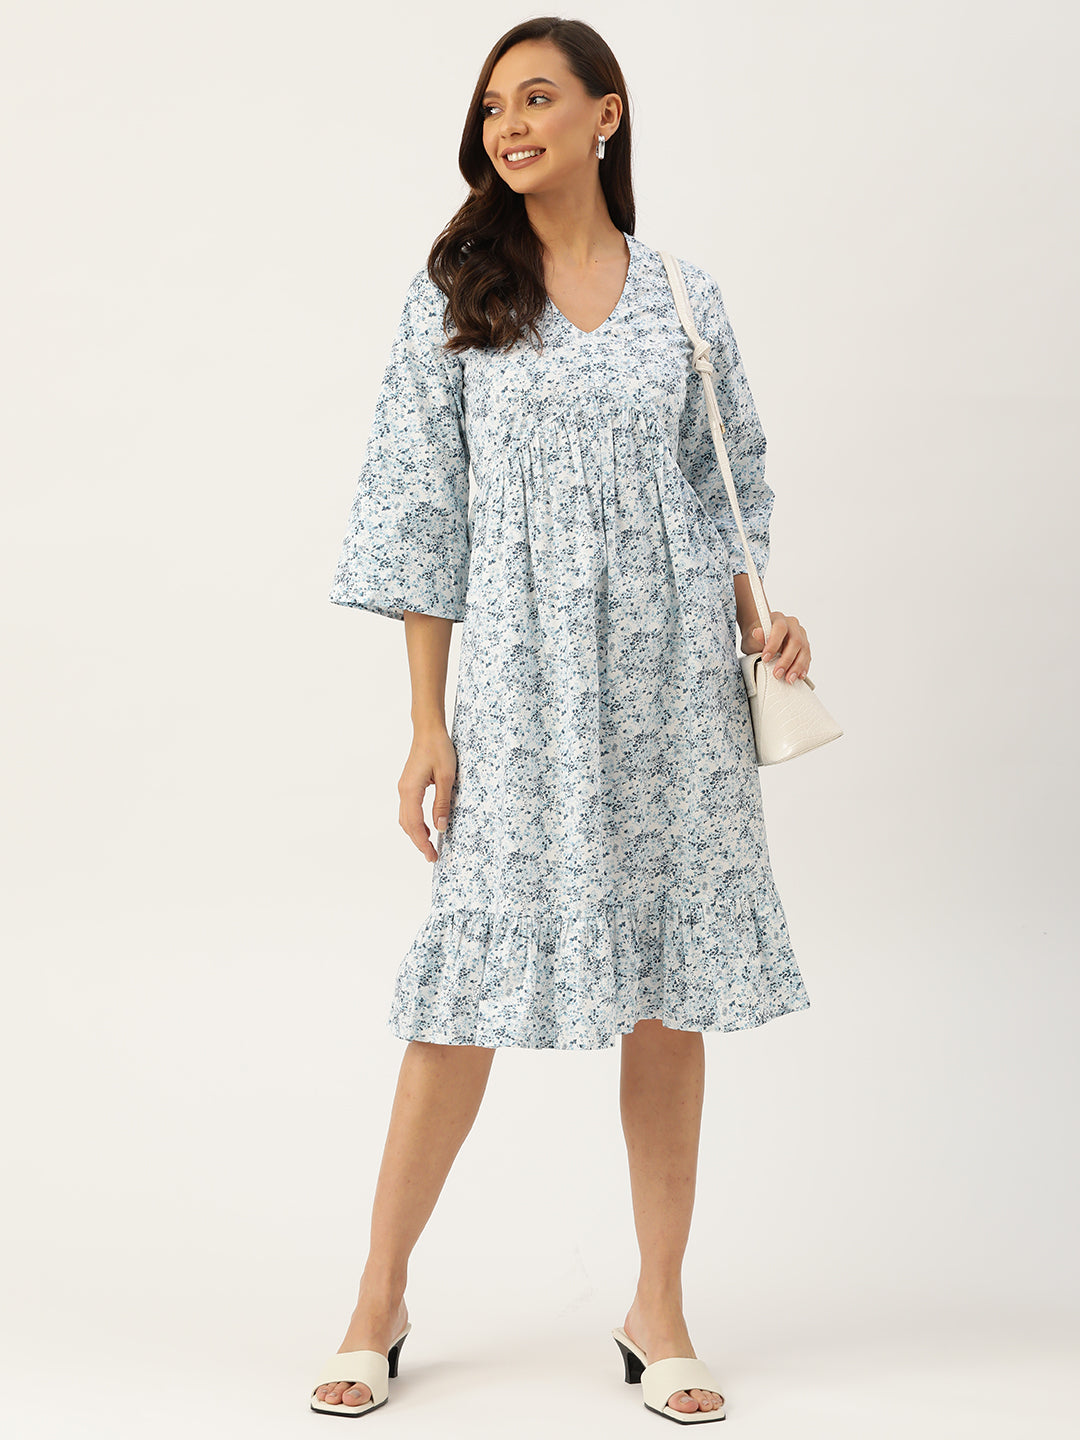 सफ़ेद और नीले रंग की फ्लोरल कॉटन A-लाइन ड्रेस